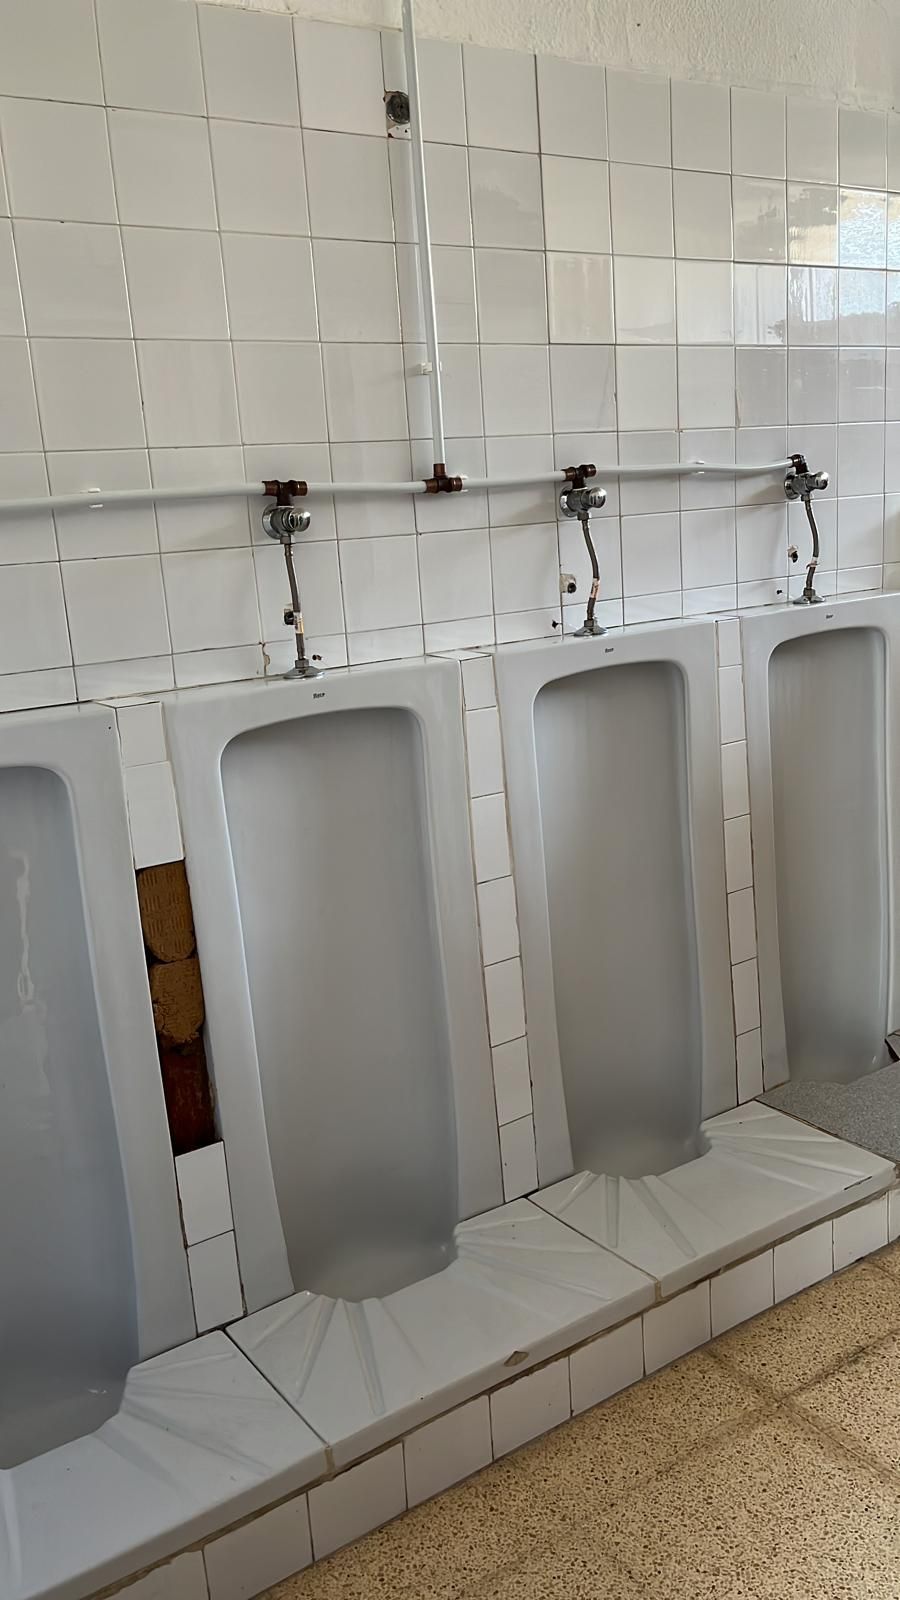 Los baños del CEIP Eleonor Bosch siguen siendo los mismos que cuando se inauguró